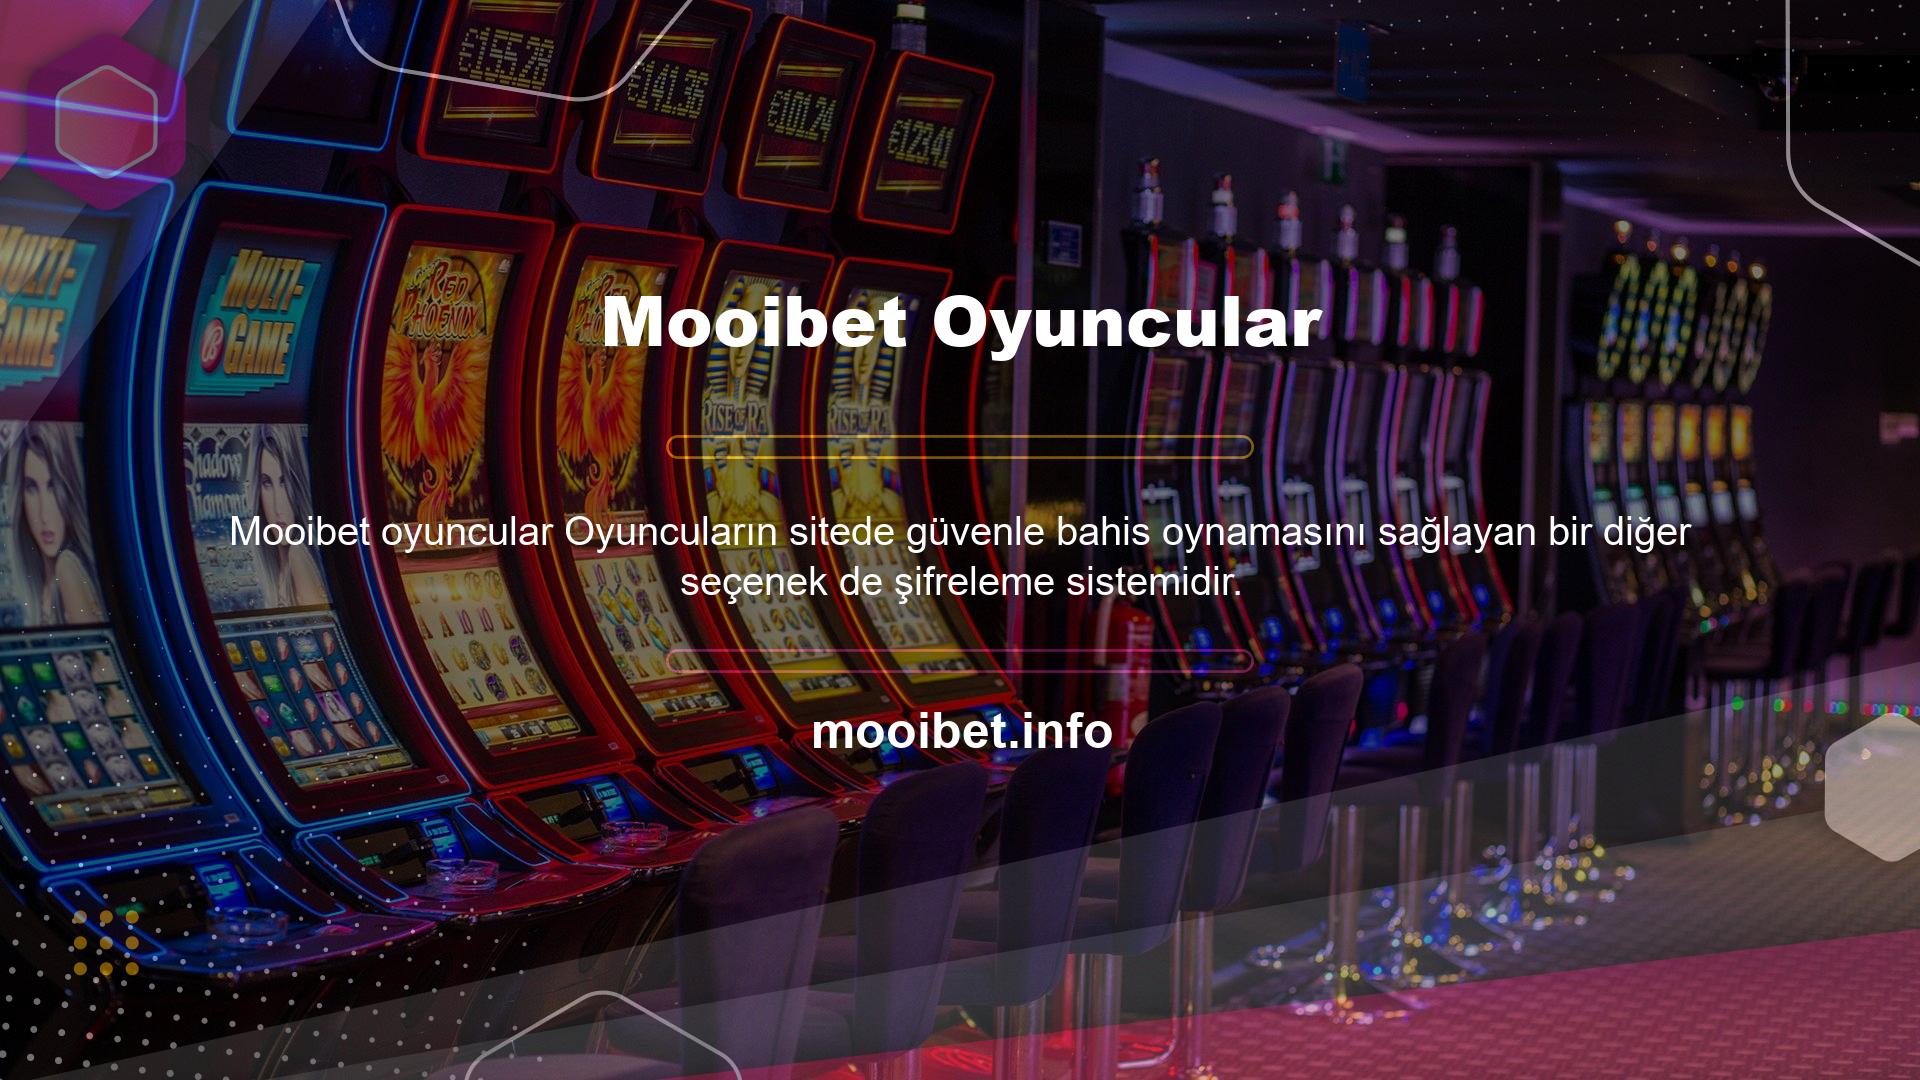 Mooibet şifreleme sistemi, oyuncuların üyelikleri sırasında hesap şifrelerini korumalarına yardımcı olur